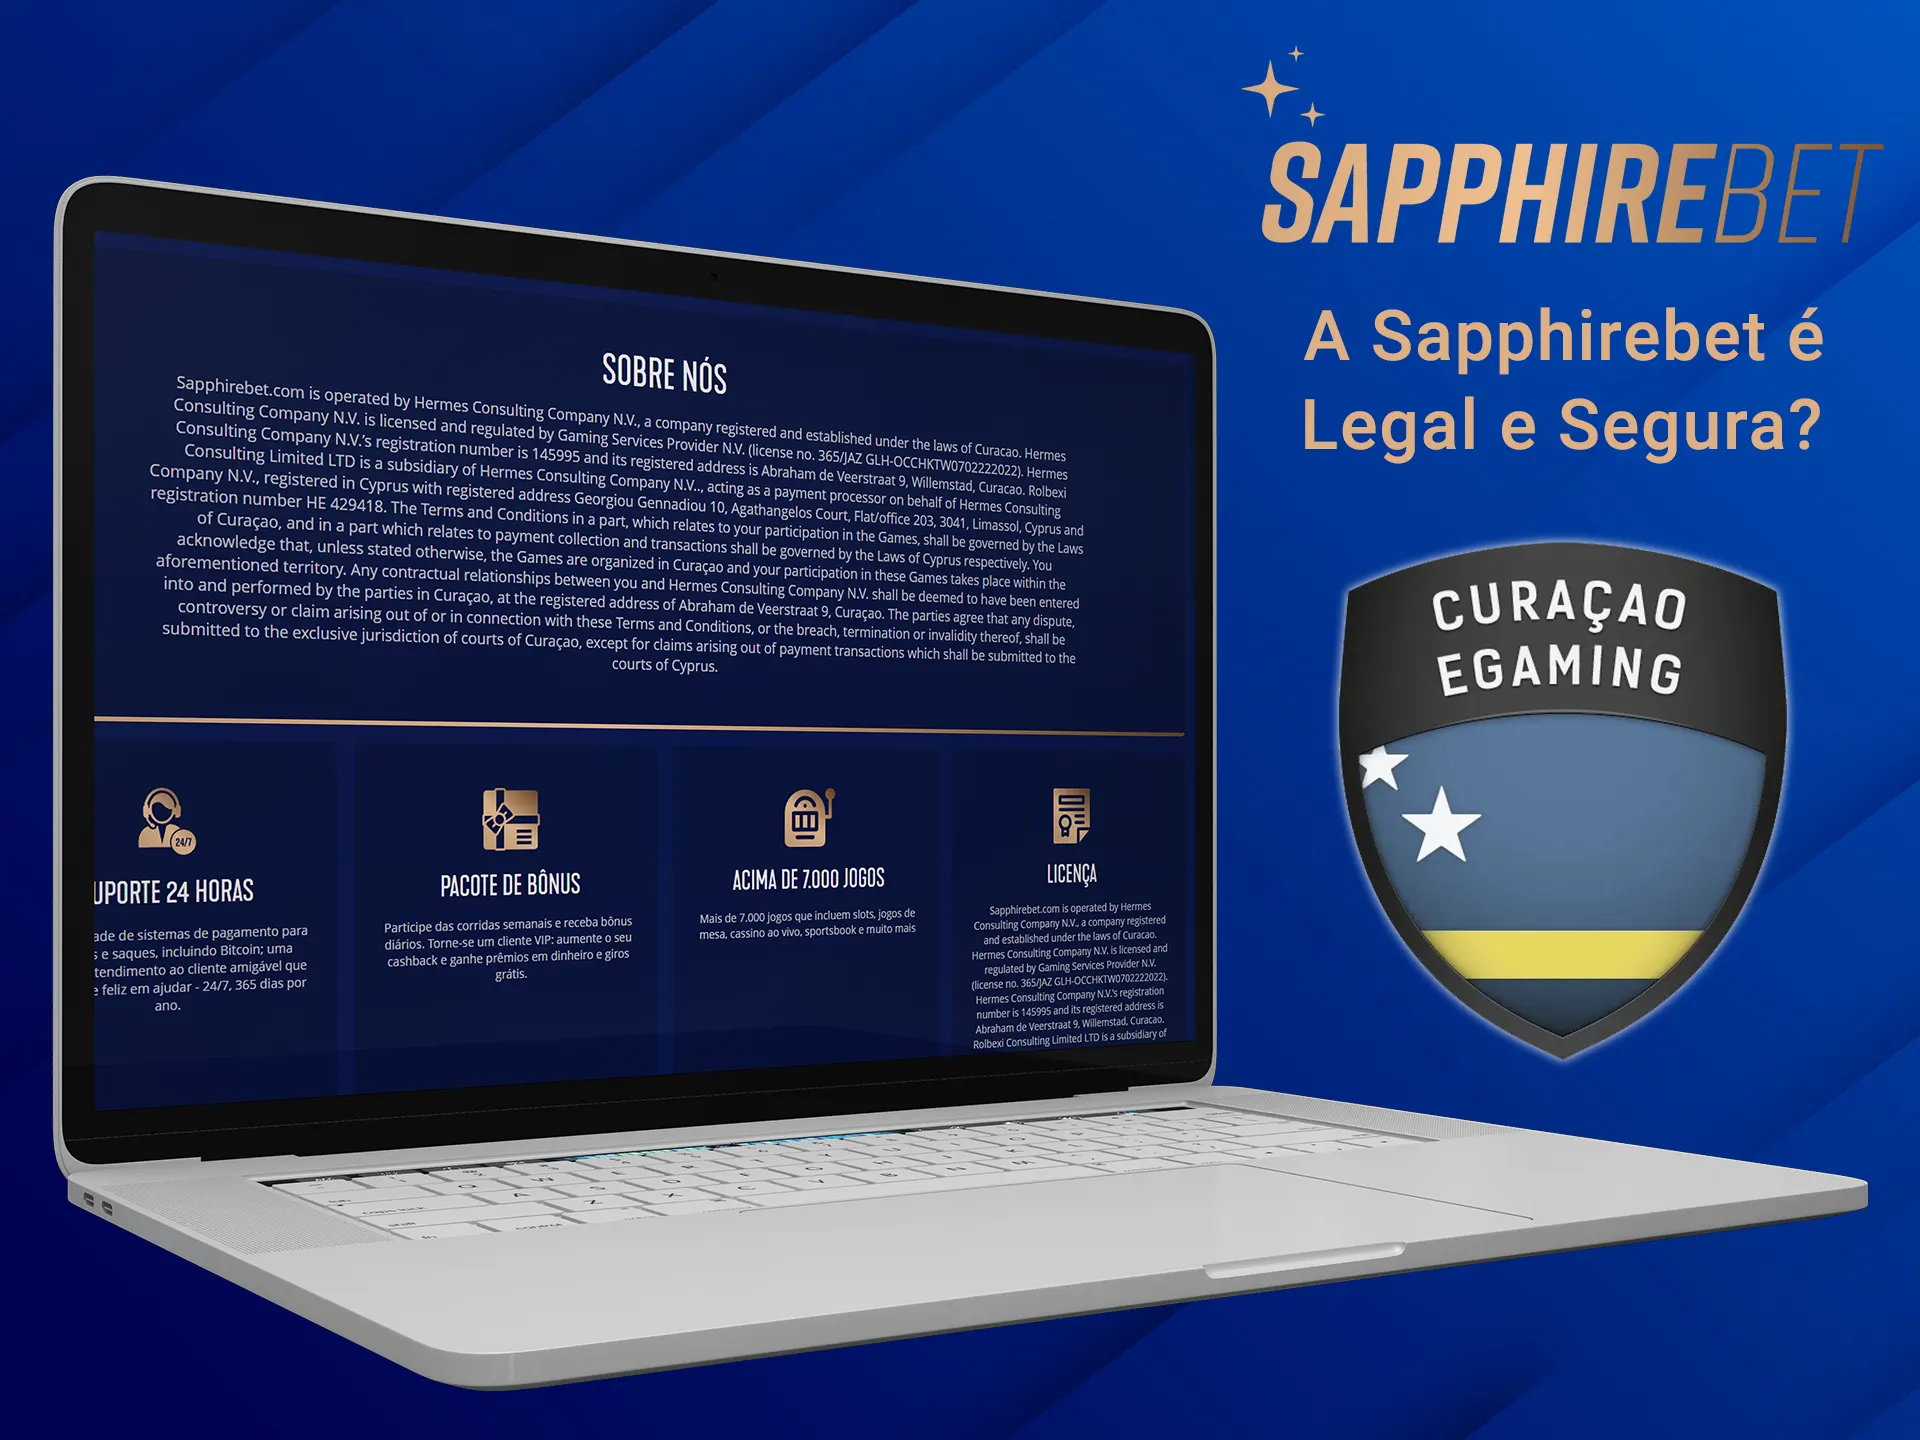 A Sapphirebet é uma empresa de apostas totalmente legal.